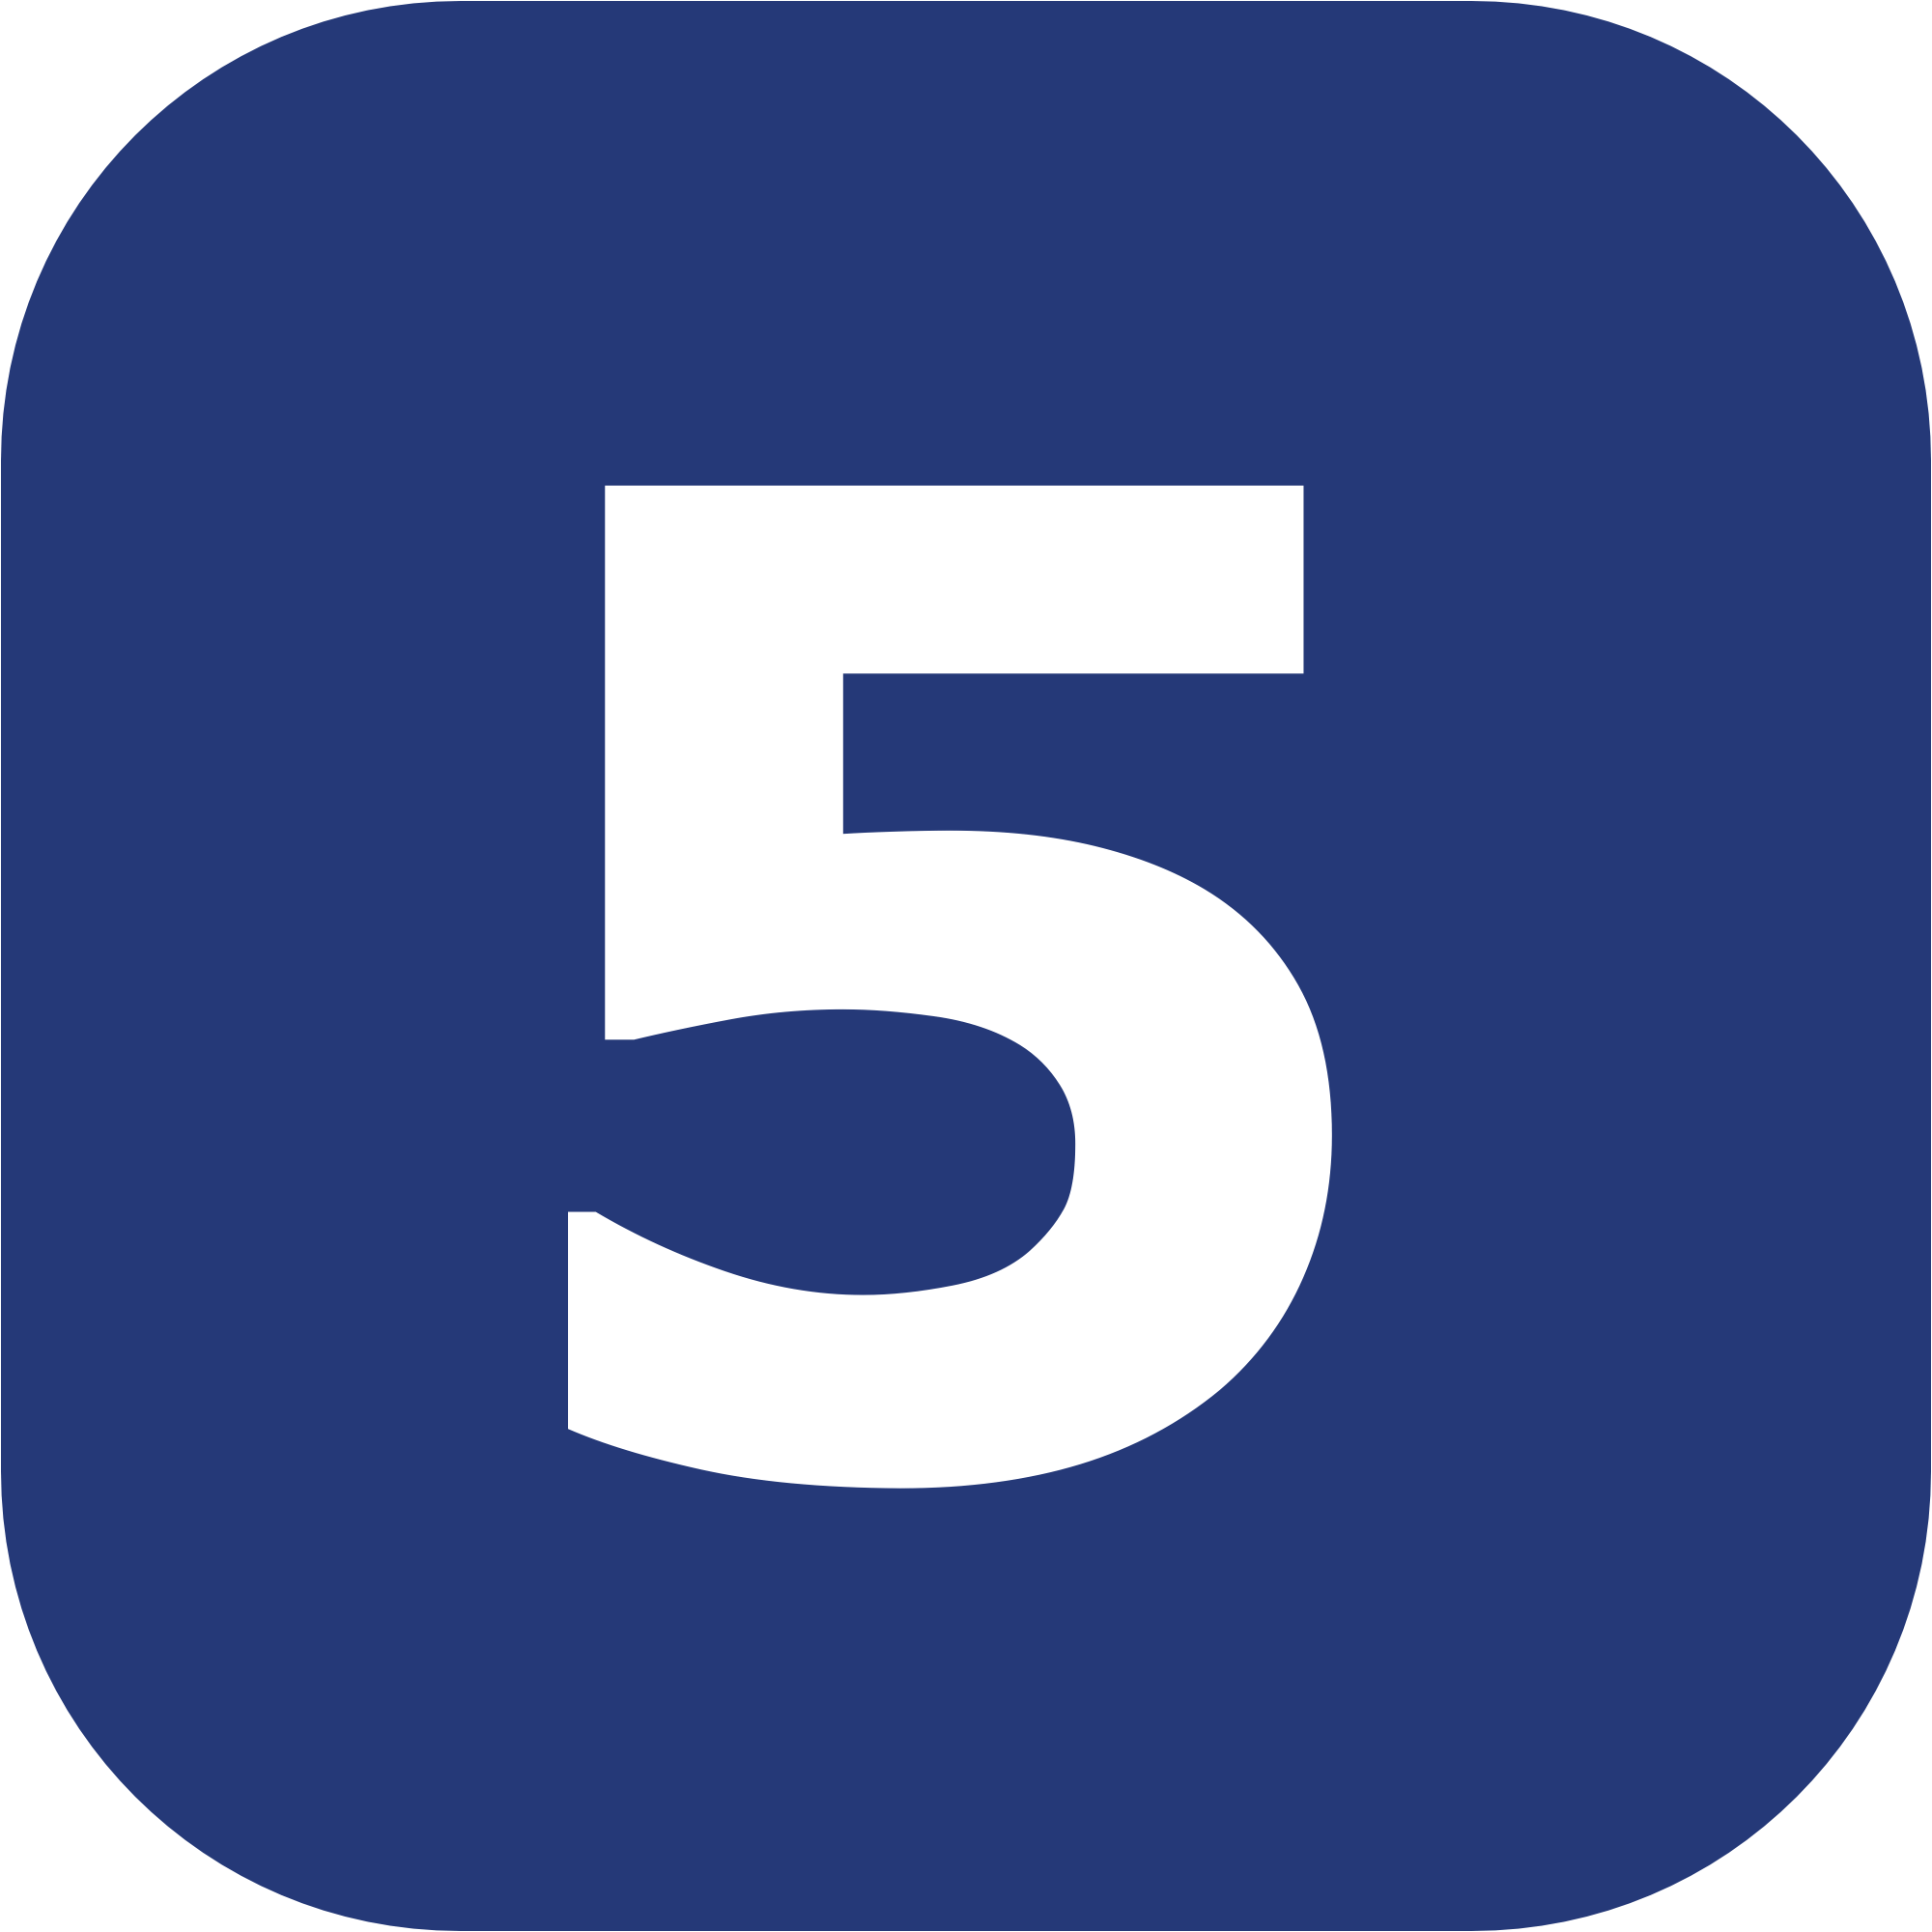 Blue Number 5 Logo - Number 5 PNG images free download